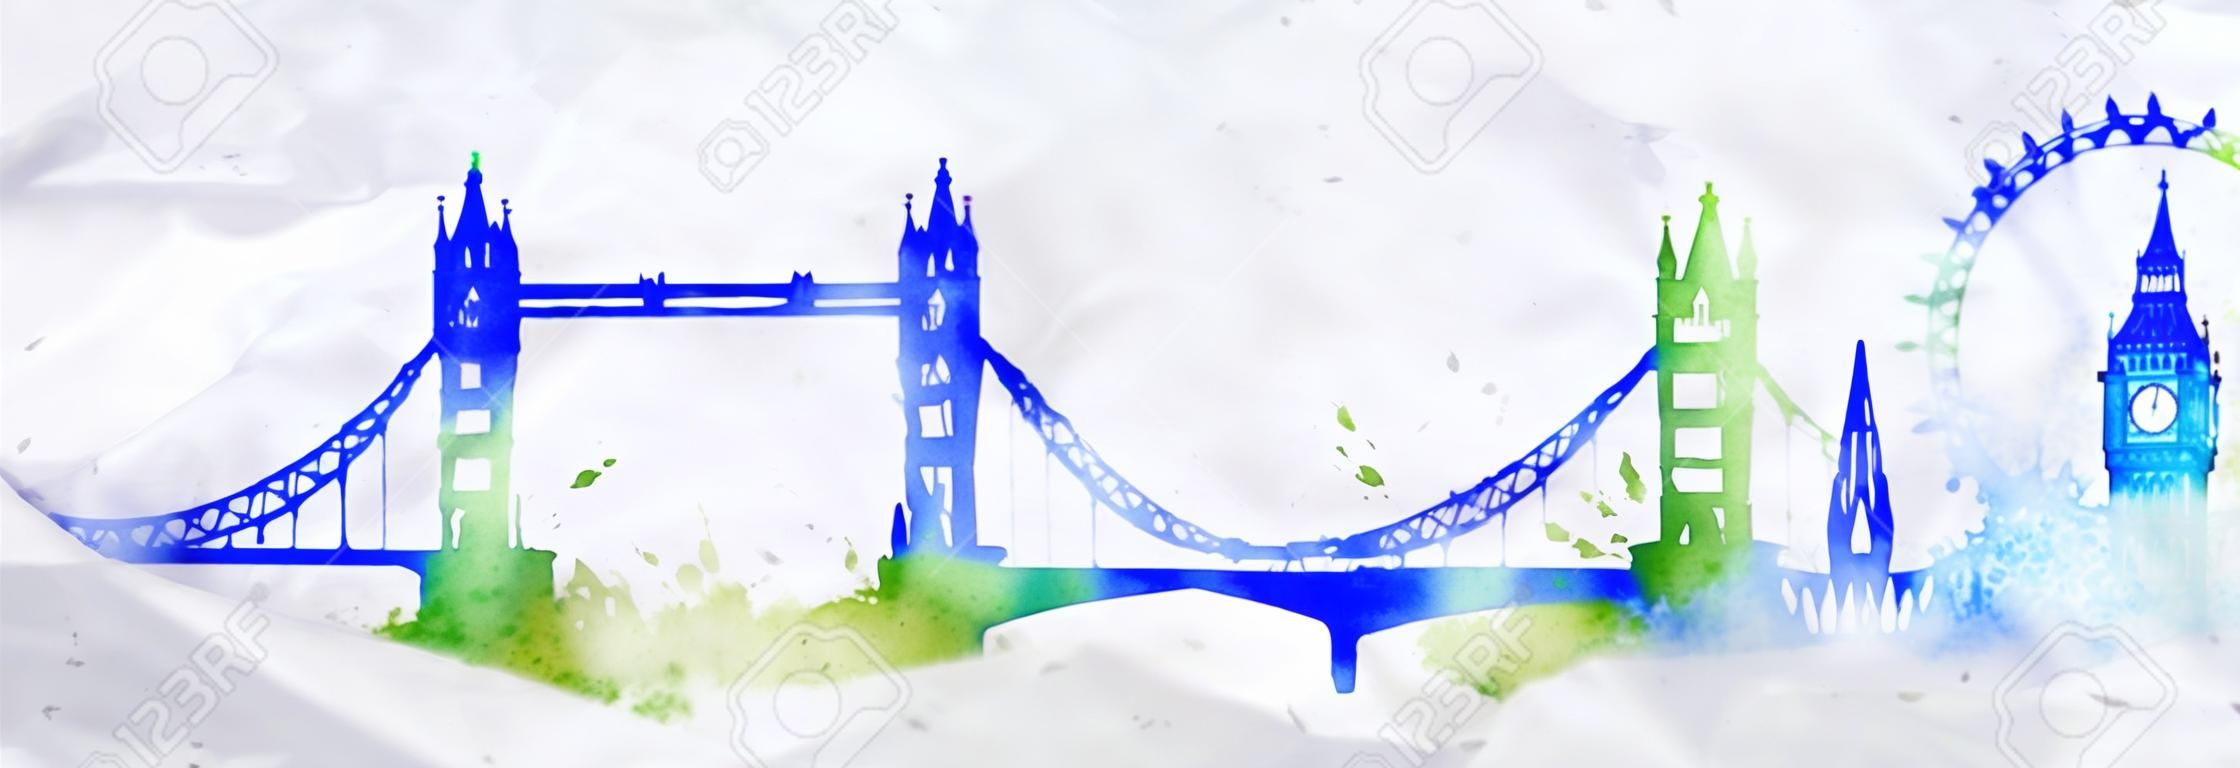 剪影倫敦城市塗上水彩潑濺滴條紋標誌性建築與藍綠色的顏色